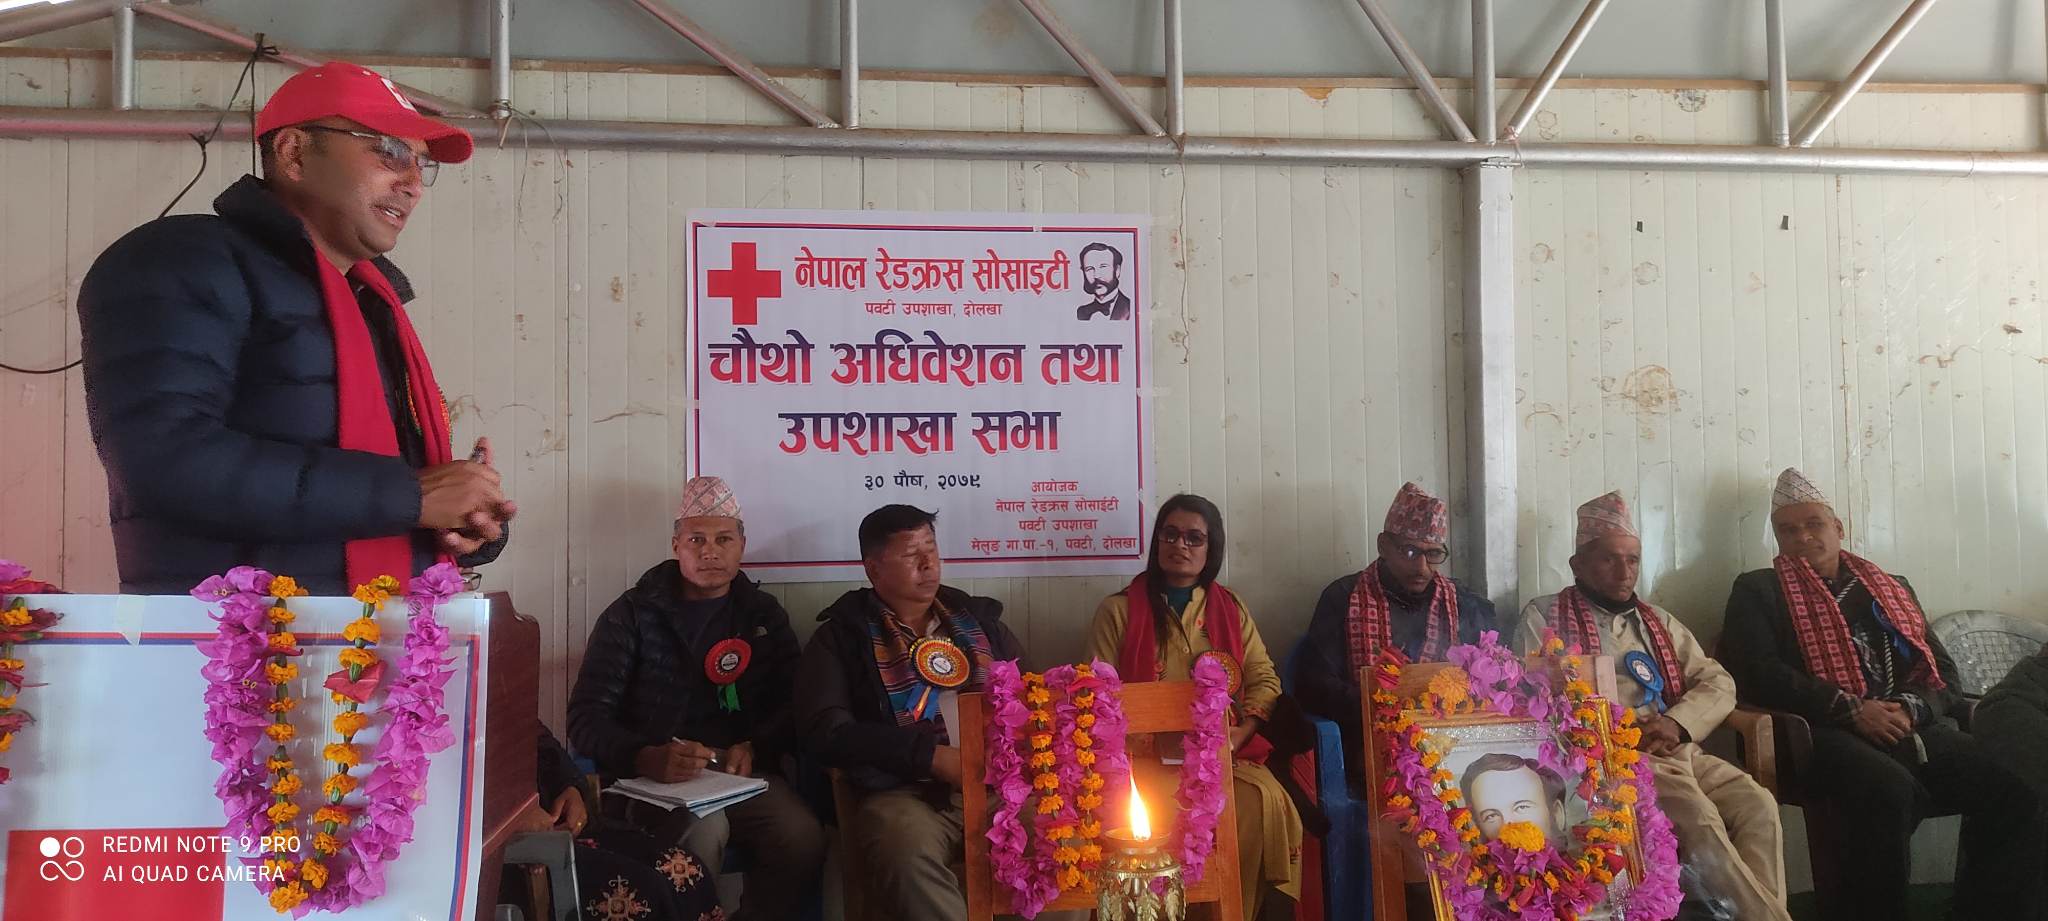 नेपाल रेडक्रस पवटी उपशाखाको चौथो अधिवेशन सम्पन्न   